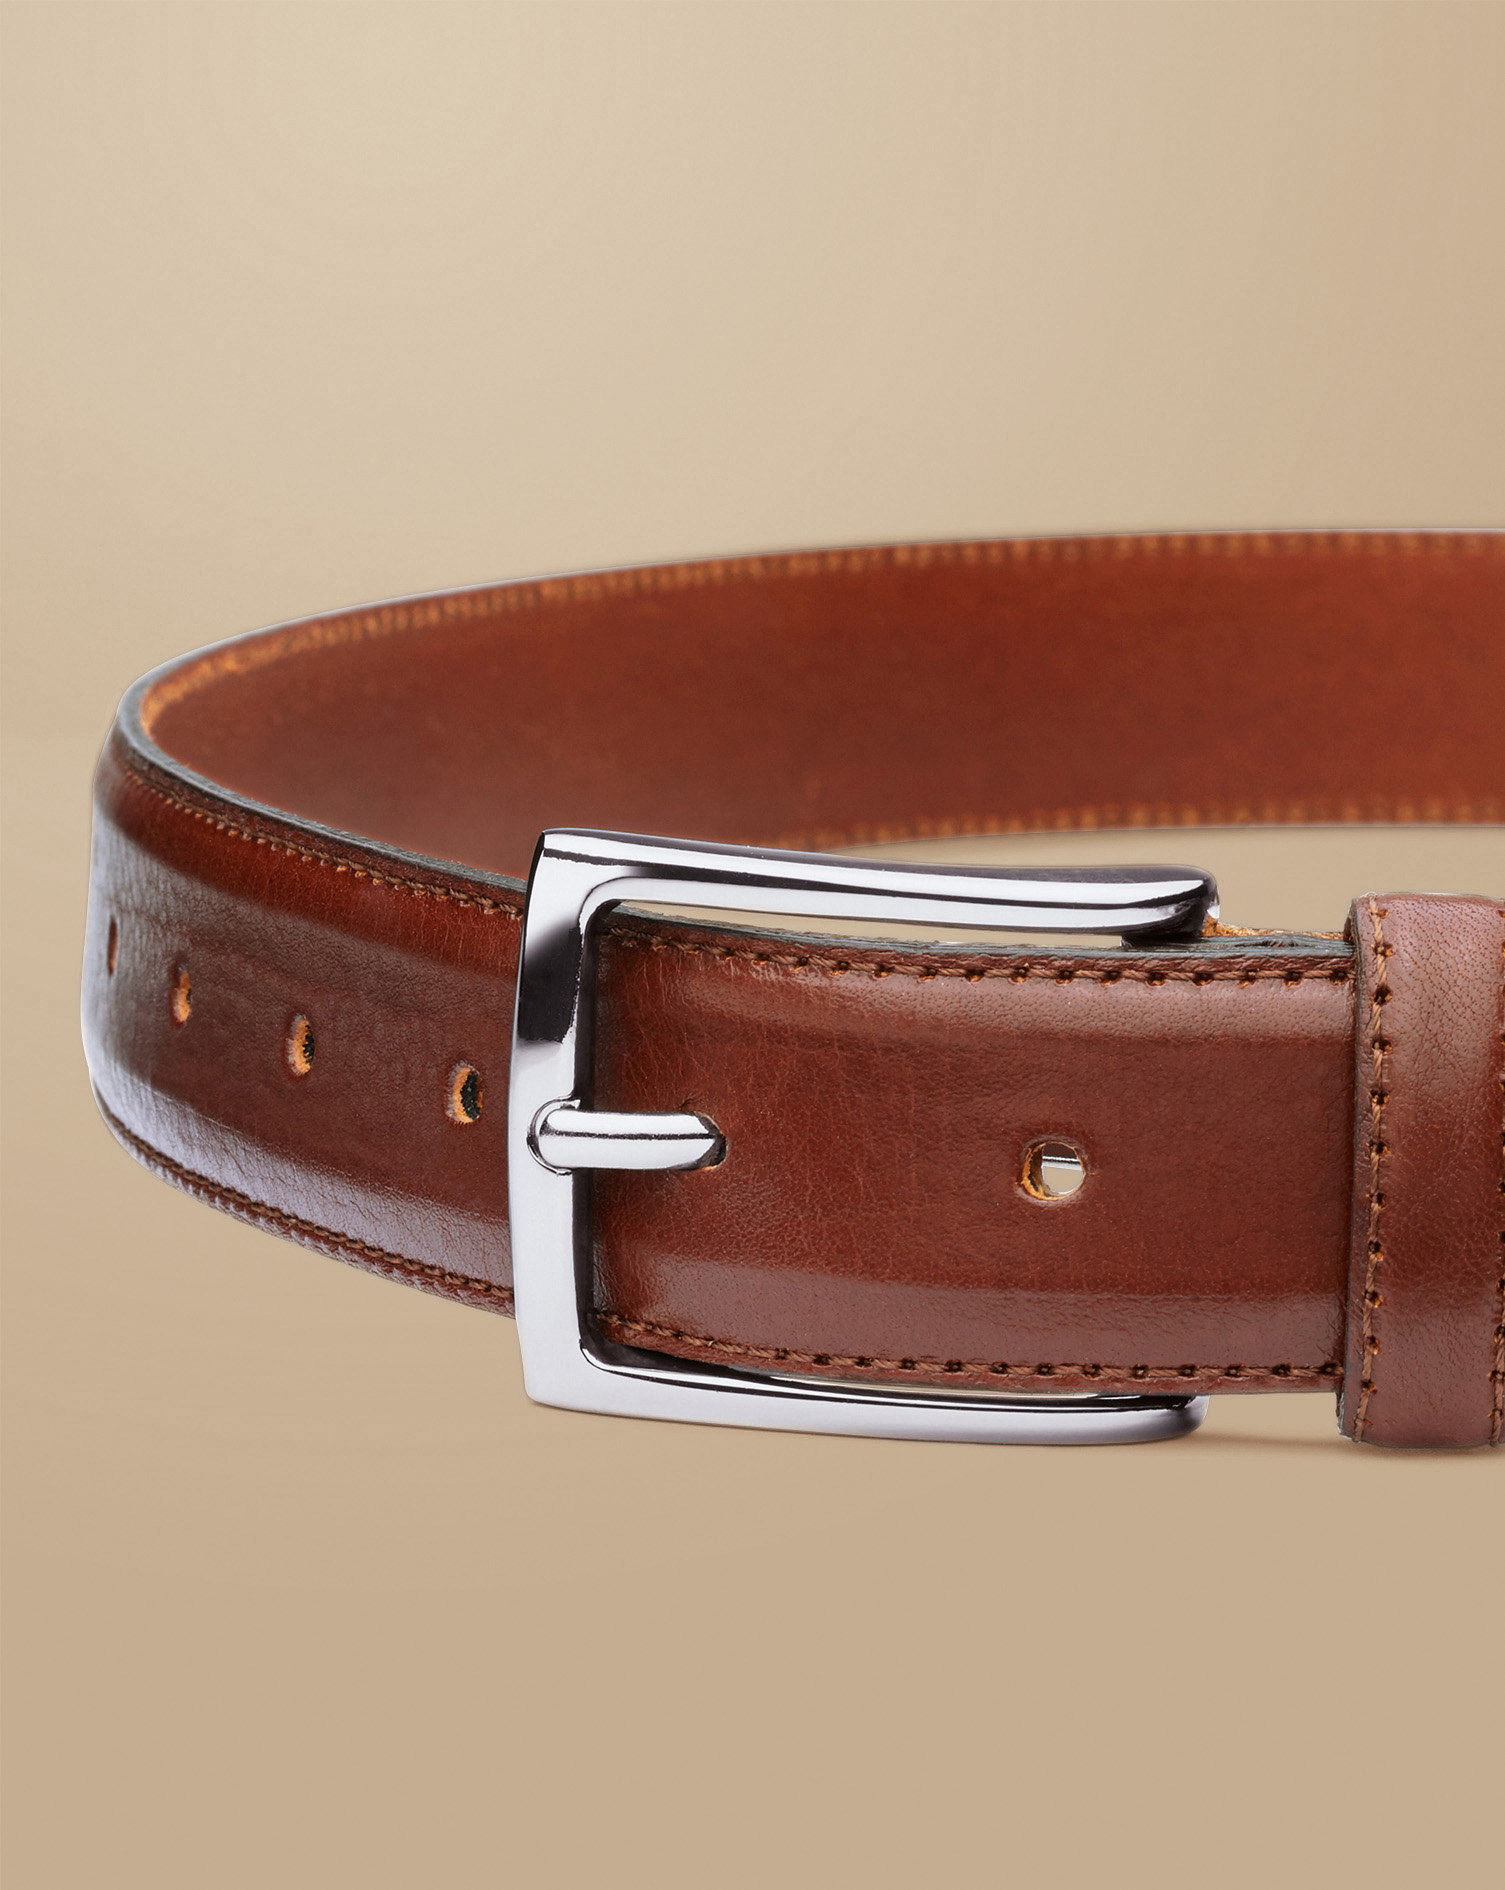 Men's Charles Tyrwhitt Formal Belt - Dark Tan Brown Size 34 Leather
